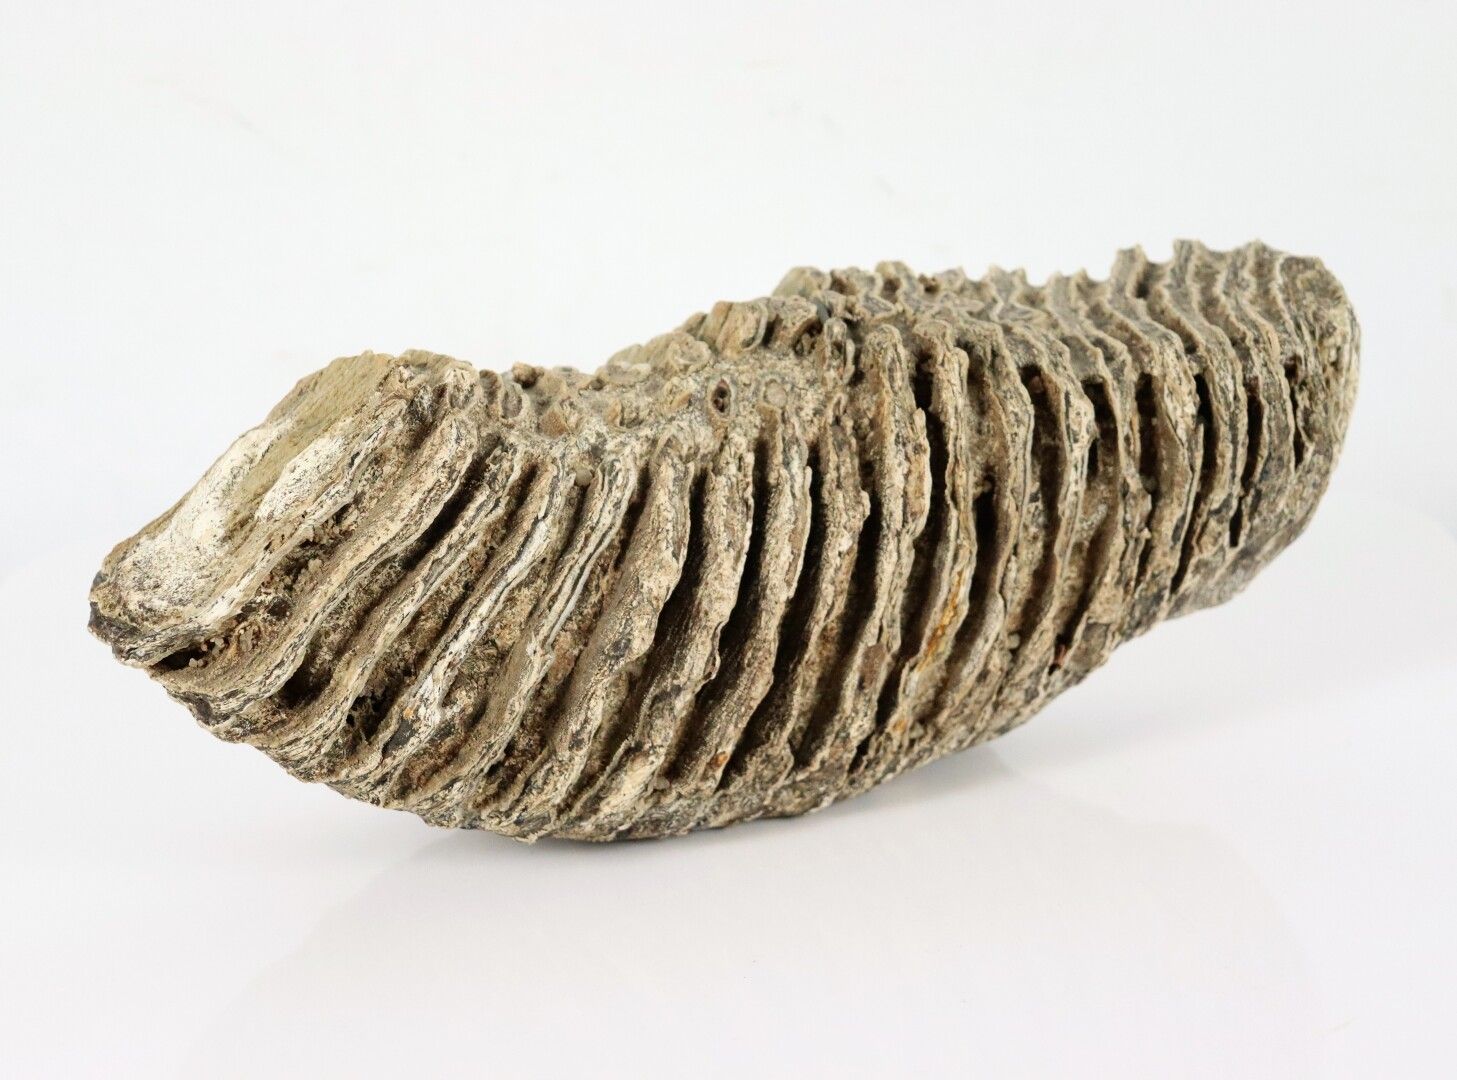 Null Molaire de mammouth fossilisée.

Trouvée dans la Loire.

H_12 cm L_30 cm